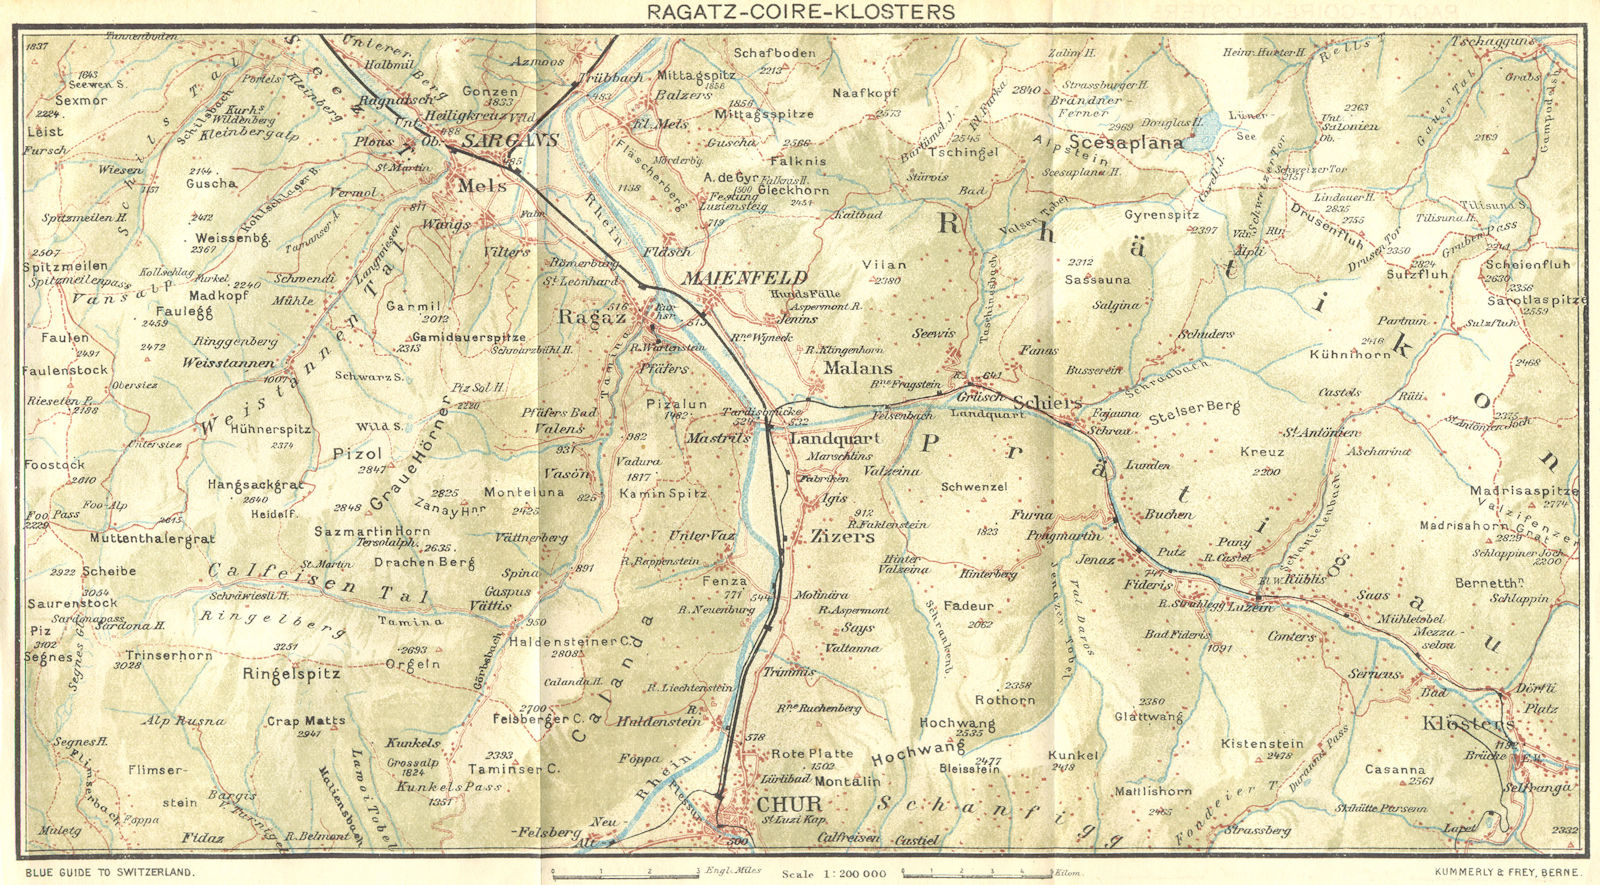 SWITZERLAND. Ragatz-Coire-Klosters 1923 old antique vintage map plan chart